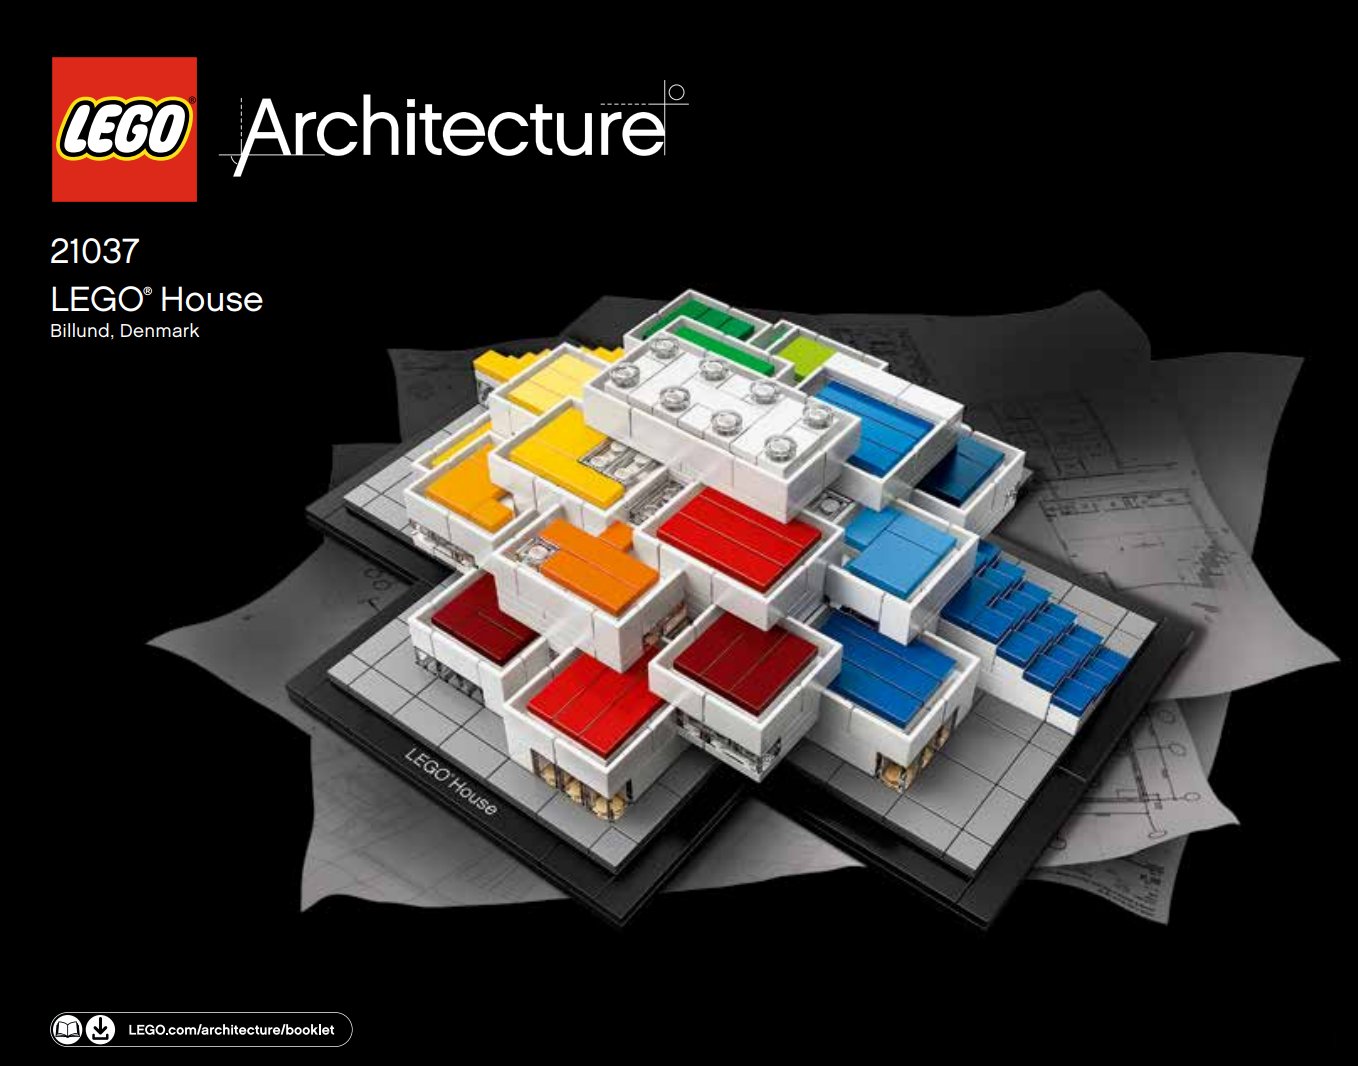 samfund værtinde Om indstilling 21037 LEGO House | Brickipedia | Fandom